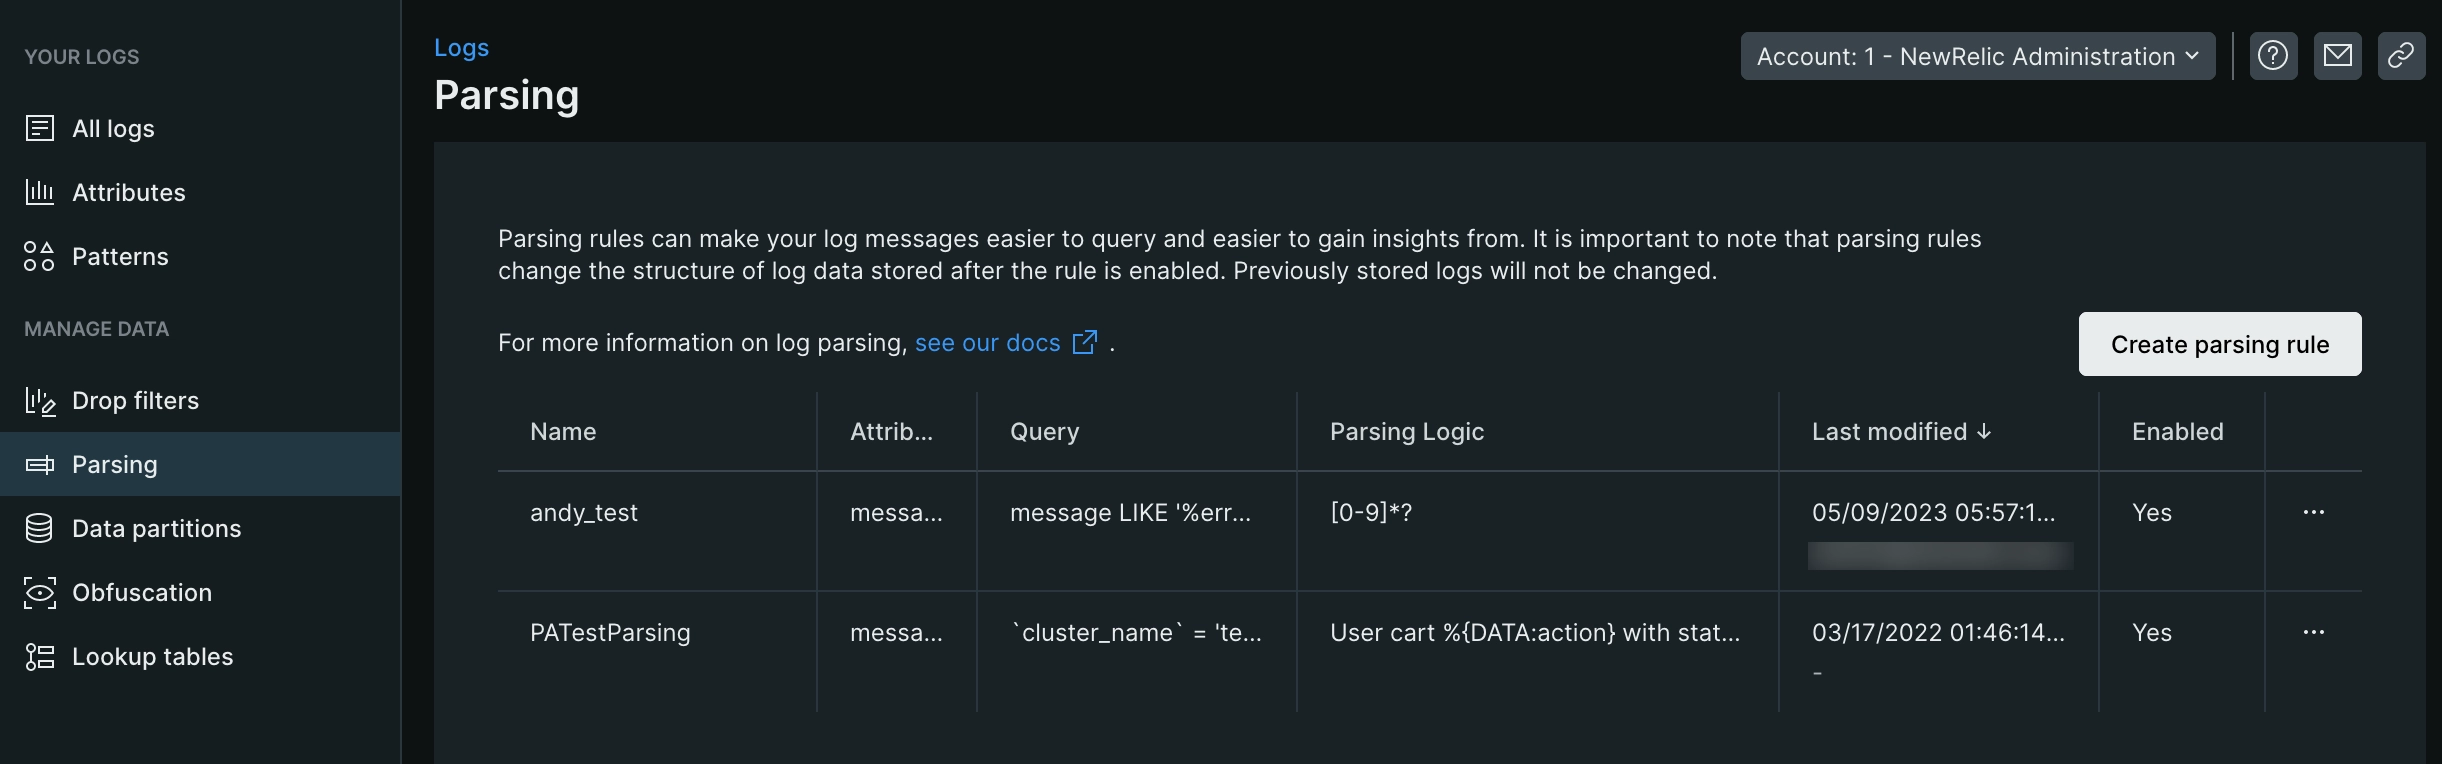 An image displaying New Relic's log parsing UI